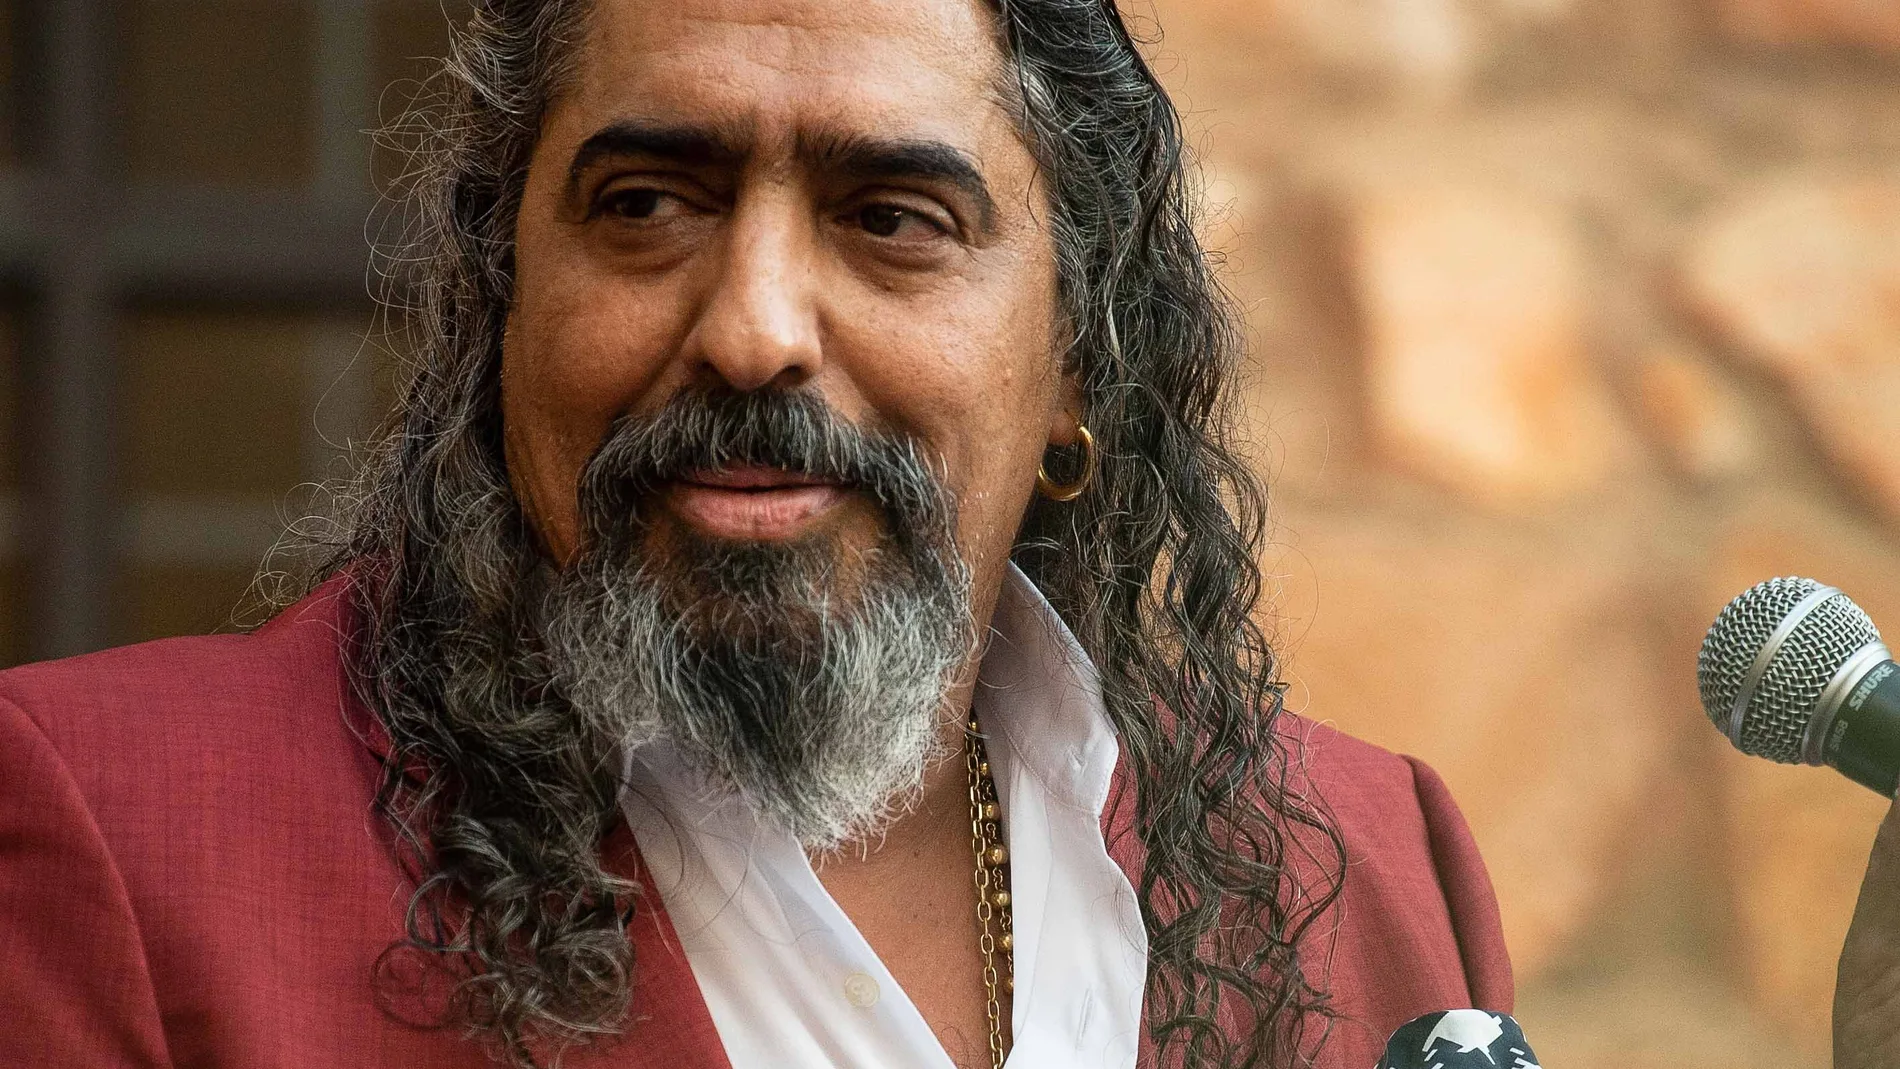 El Festival de Flamenco y Fado de Badajoz cancela el concierto de El Cigala hasta que se aclare su causa judicial